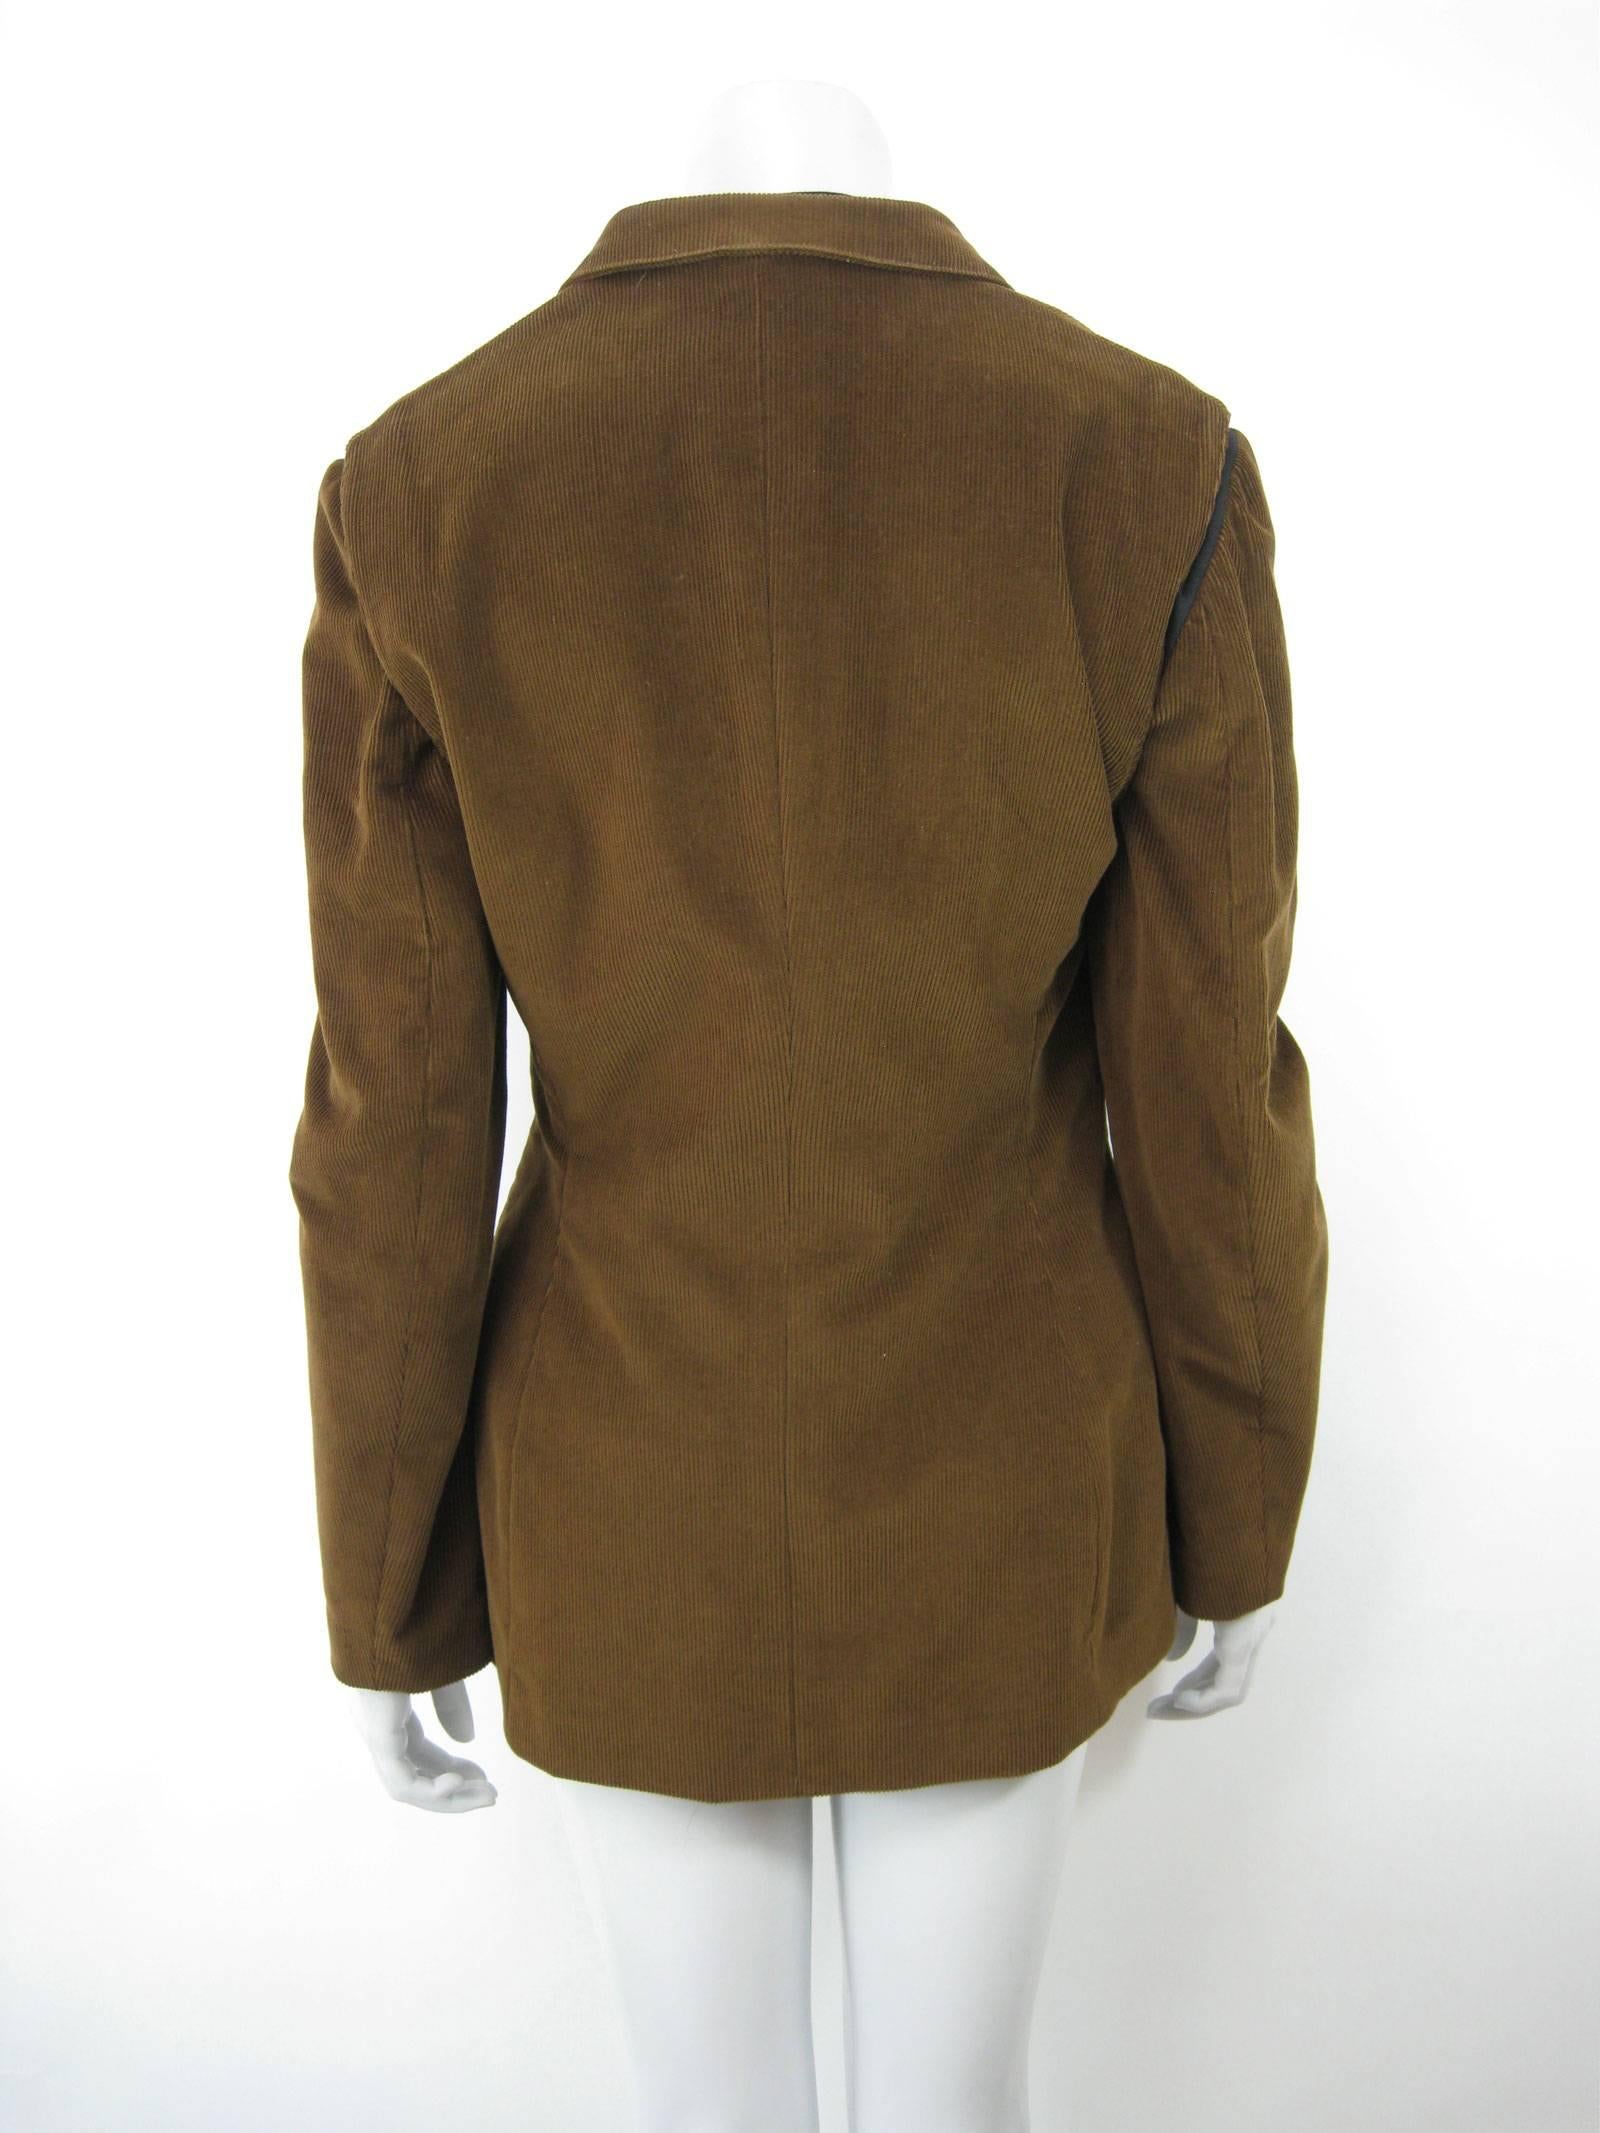 Gaultier Junior Brown Corduroy 2 Piece Mock Jacket Shirt and Vest 4